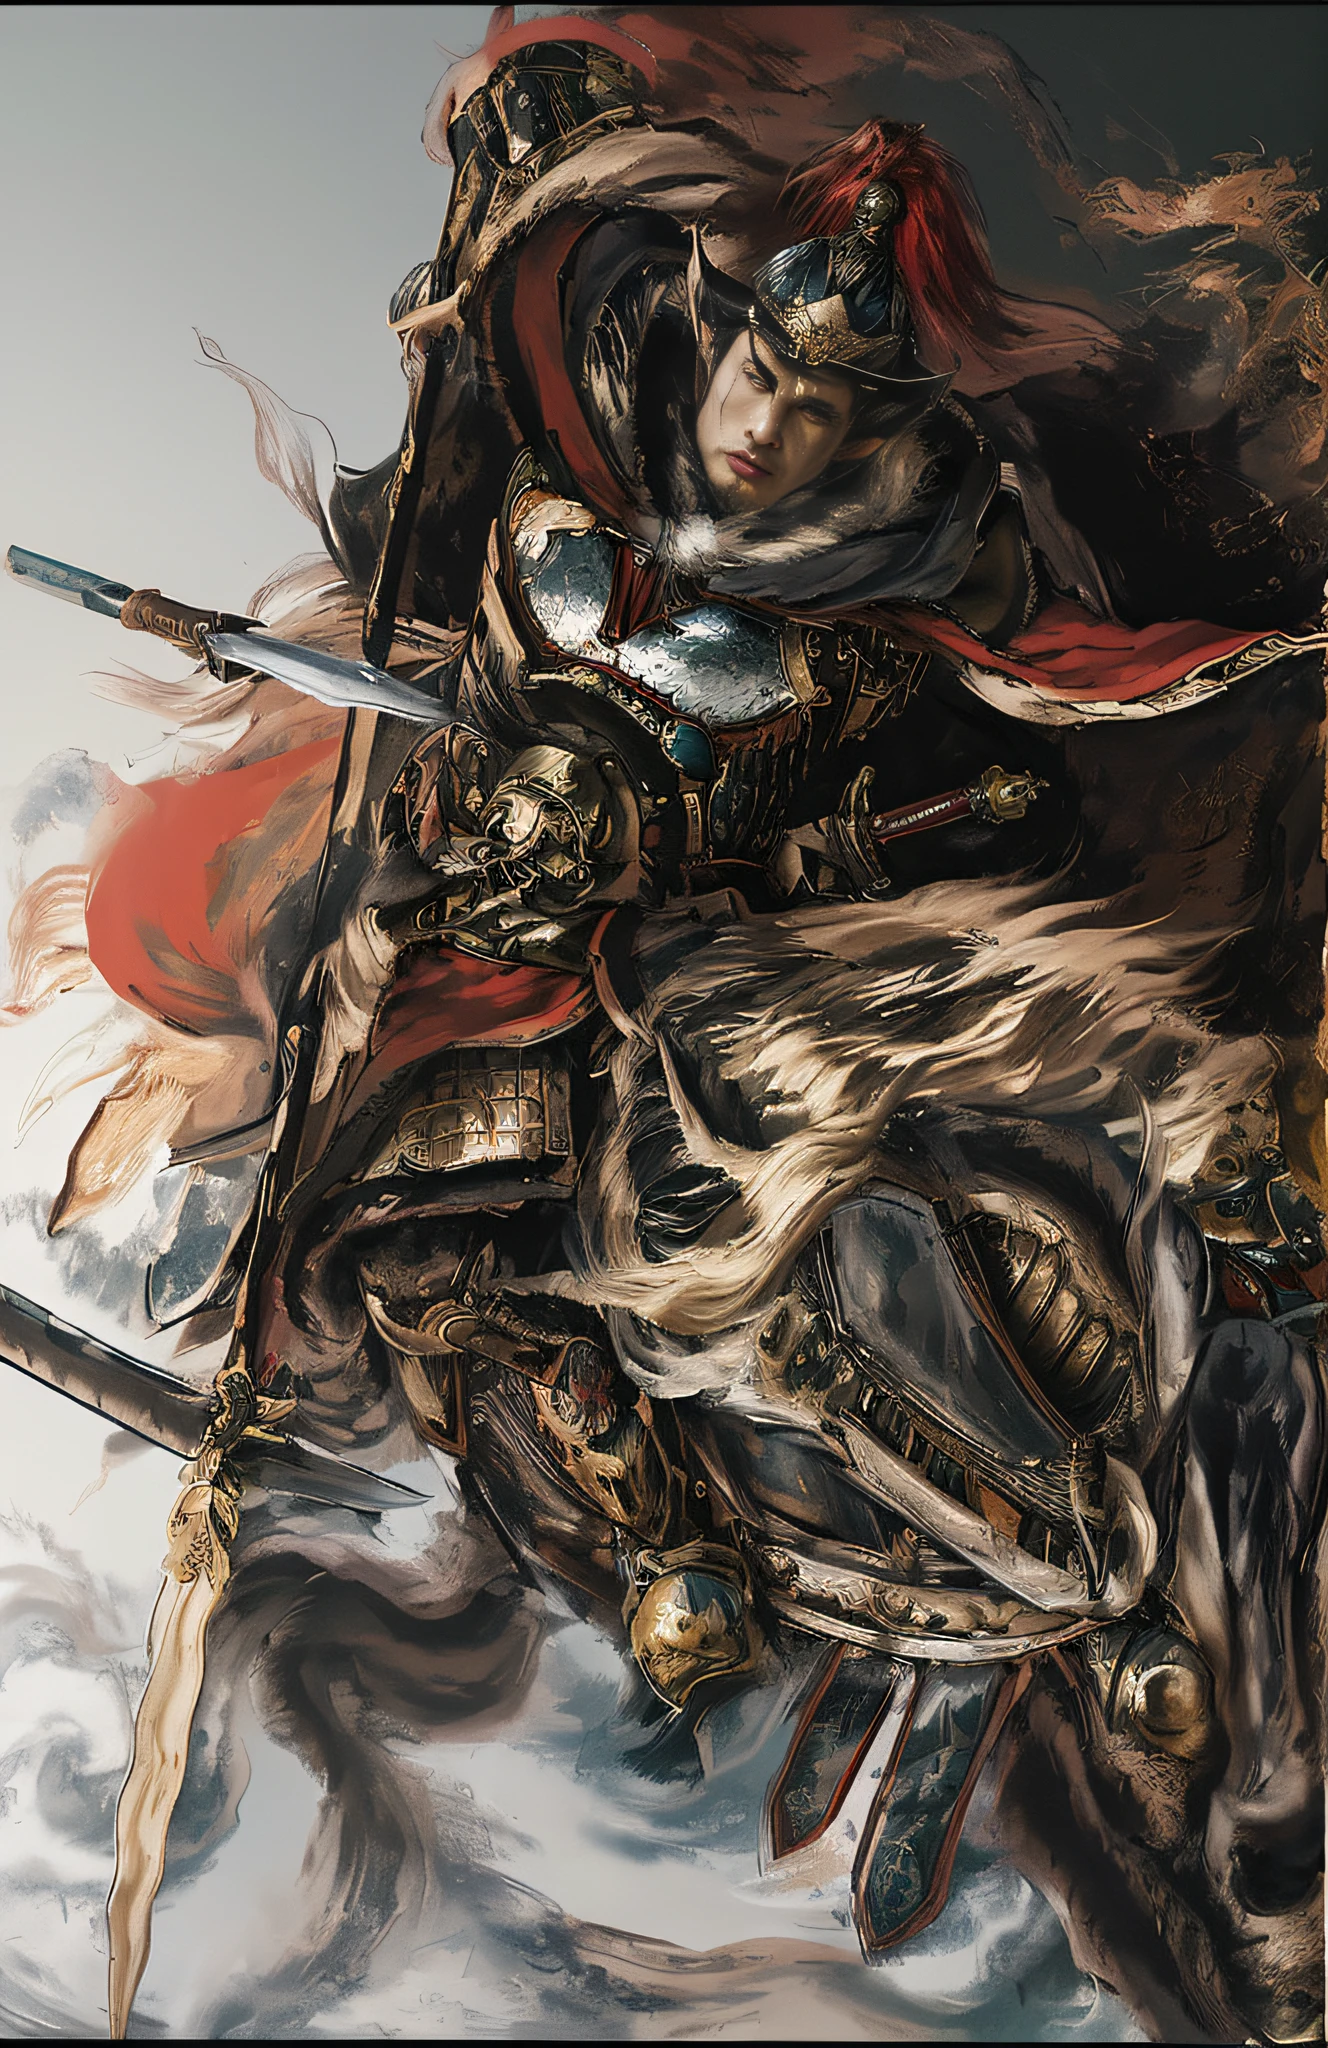 ((Unreal Engine 5)), realistische Darstellung, exzellent, (Vollständiger Satz Samurai-Rüstung), (Cuirassiers), (Mantel), Gemälde von Generälen der Song-Dynastie, Auf einem kriegerischen Pferd reiten，Speer in der Hand，Bekämpfe Feinde auf dem Schlachtfeld der kalten Waffen，Tapferer General，Das Gefühl kommt von Chen Danqing, Das Gefühl kommt von Shen Quan, Inspiriert von Hu Zaobin, inspiriert von Zhu Derun, inspired by Tawaraya Sōtatsu,  Ukiyo-Stil，inspiriert von Kawanabe Kyōsai, inspired by Kanō Hōgai, inspiriert von Kanō Sanraku, inspiriert von Ryūkōsai Jokei